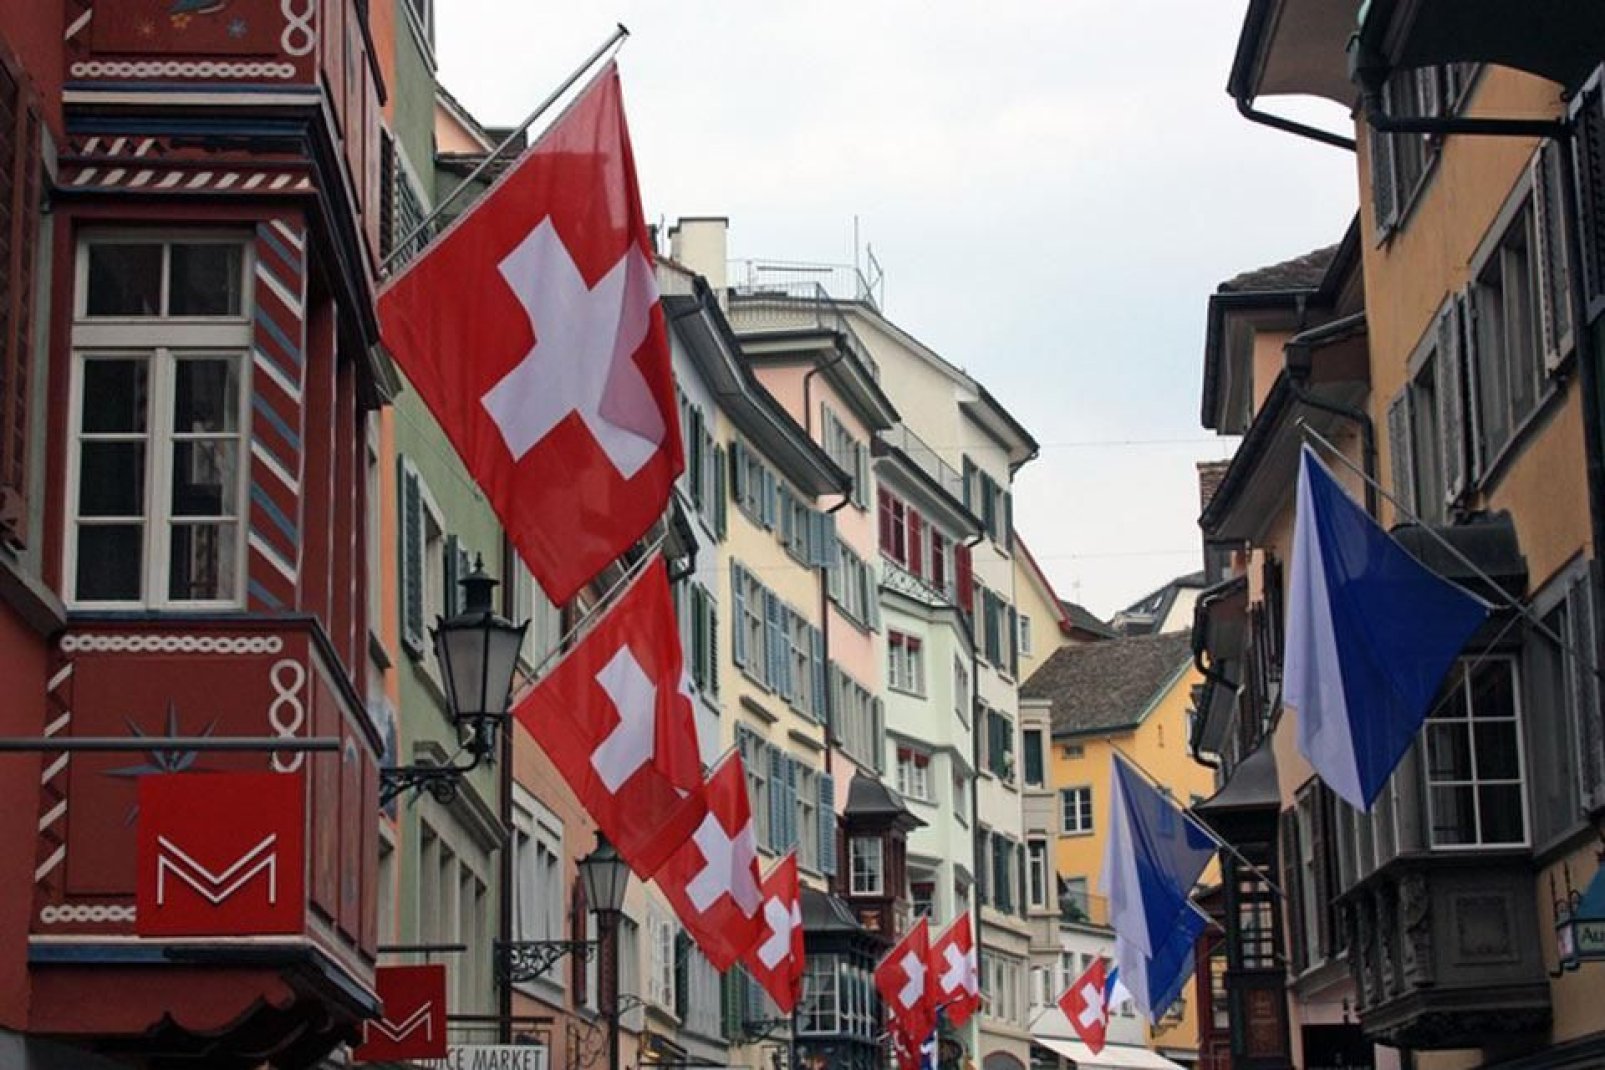 Zúrich es la ciudad más importante de Suiza. Se habla un dialecto alemán inspirado en las lenguas románicas.